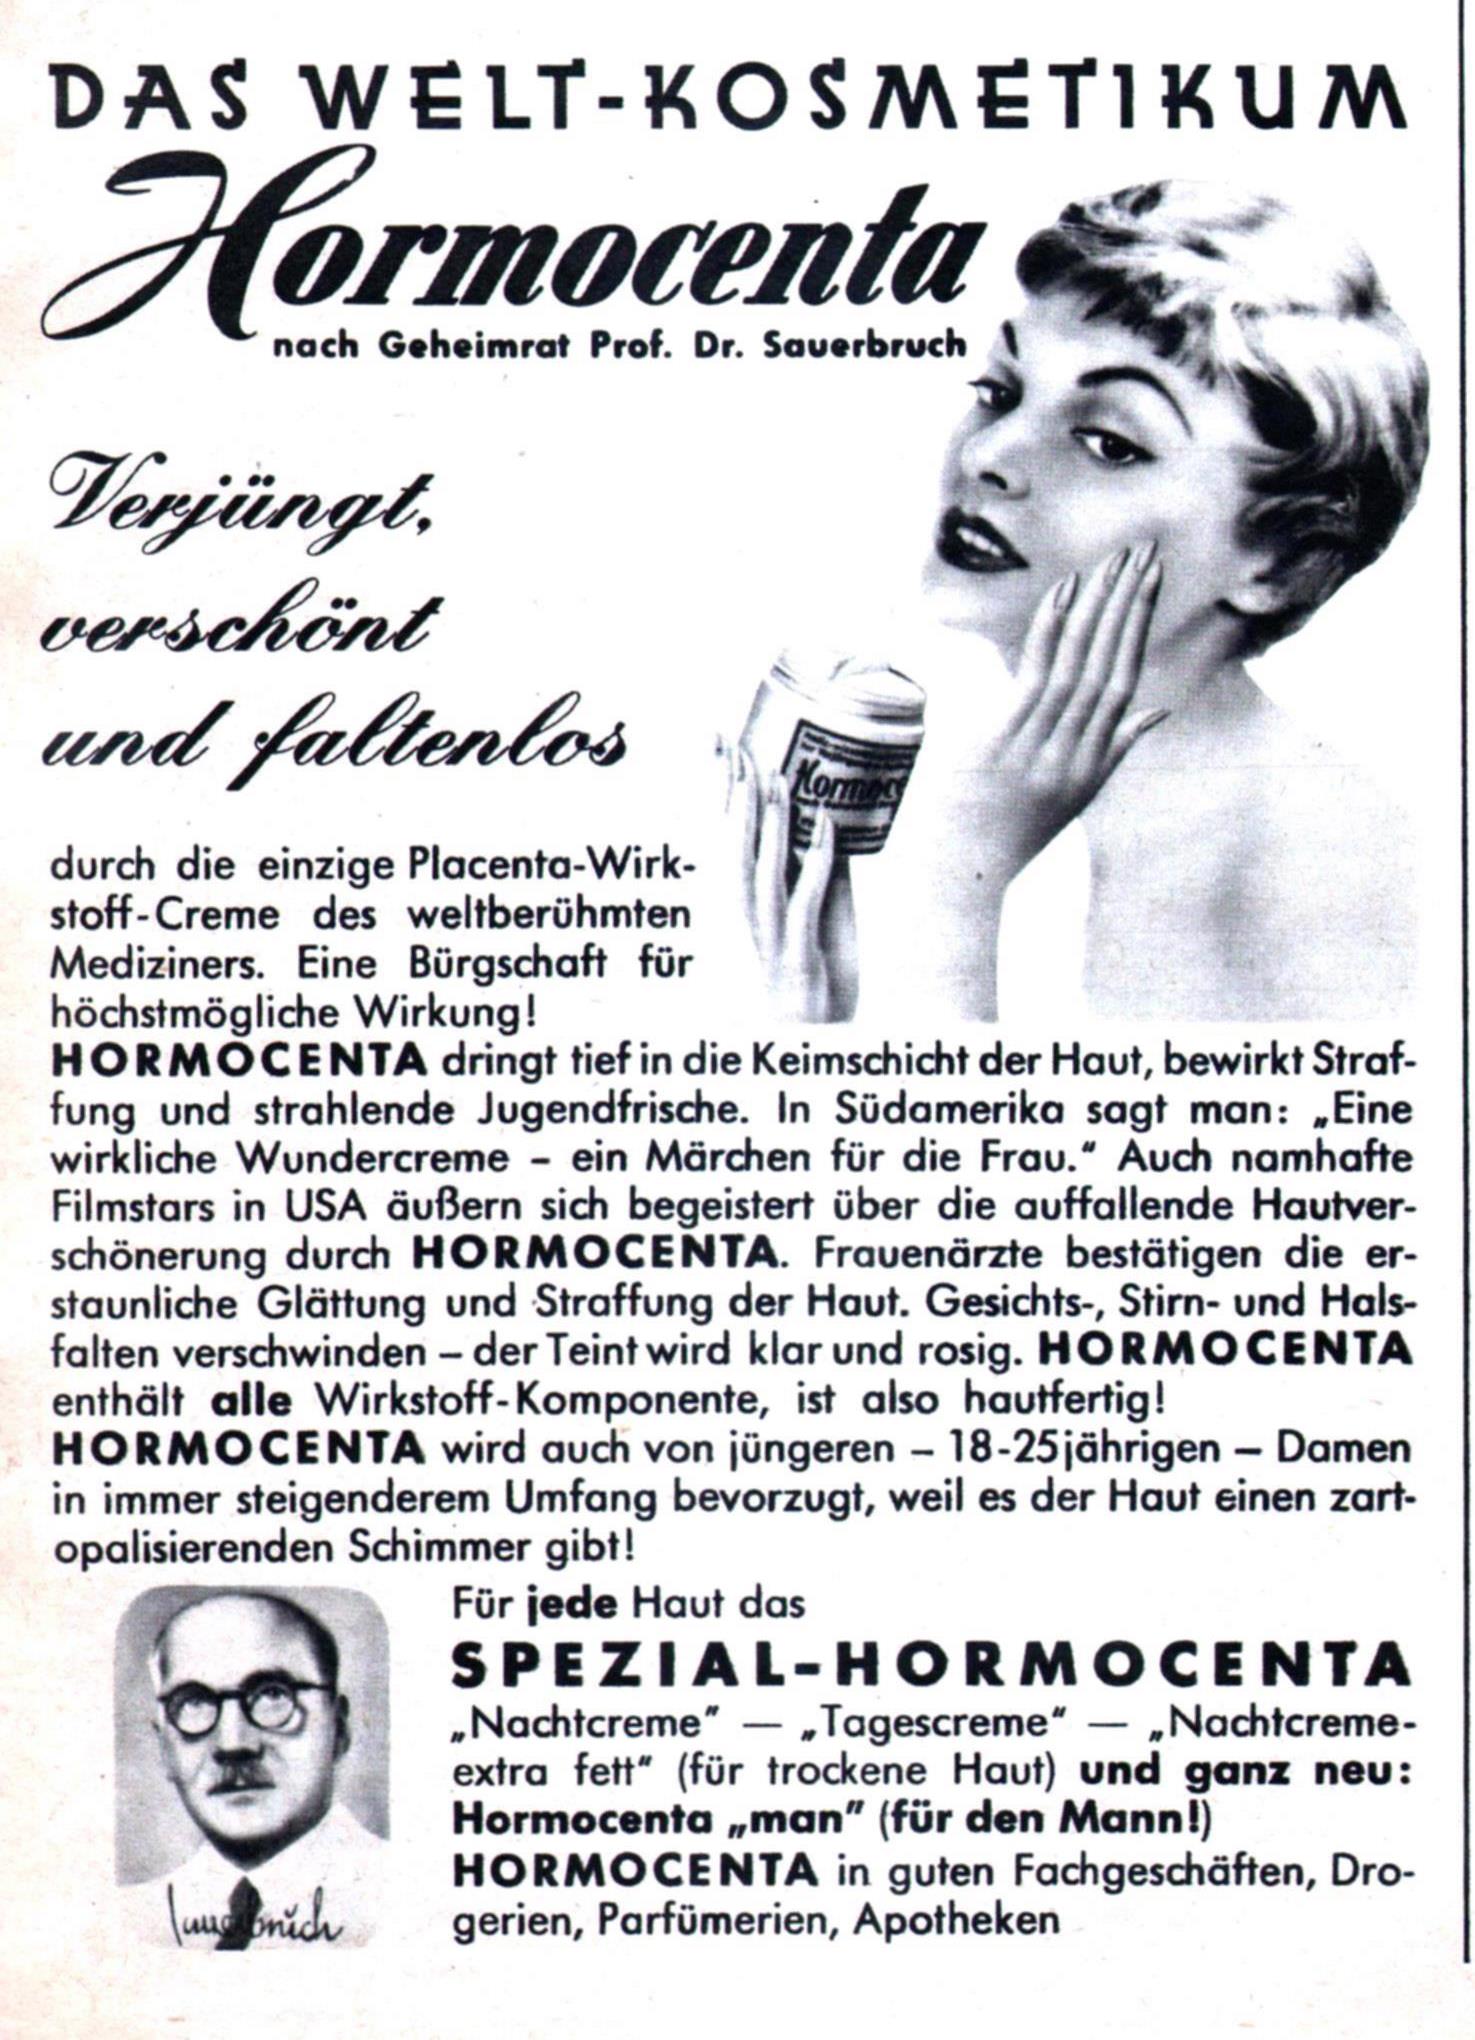 Hormocenta 1961 081.jpg